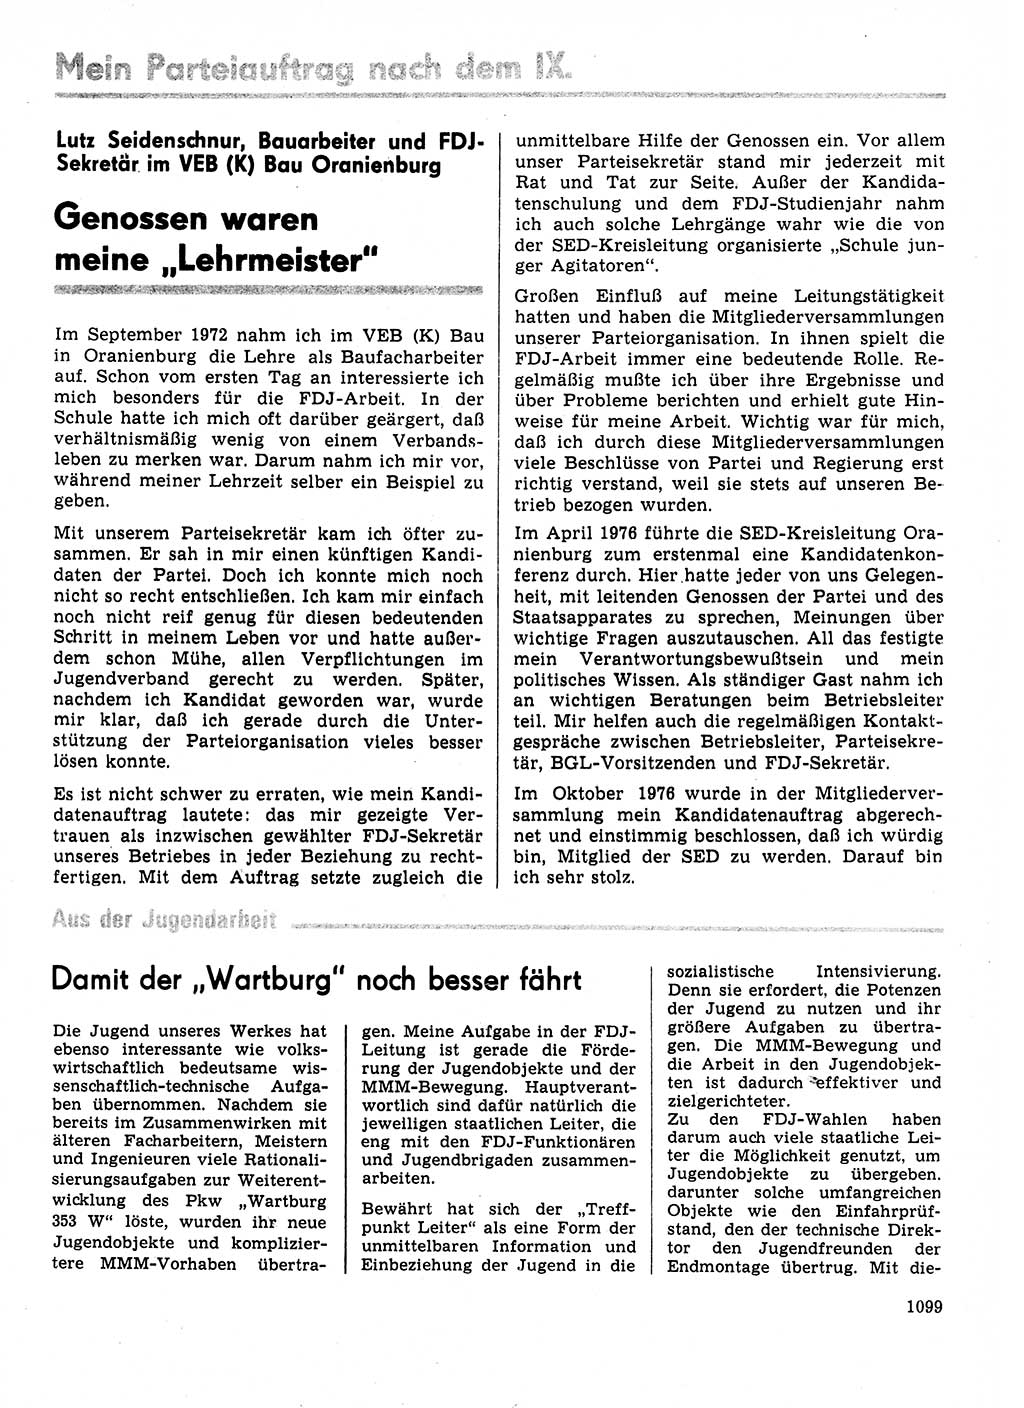 Neuer Weg (NW), Organ des Zentralkomitees (ZK) der SED (Sozialistische Einheitspartei Deutschlands) für Fragen des Parteilebens, 31. Jahrgang [Deutsche Demokratische Republik (DDR)] 1976, Seite 1099 (NW ZK SED DDR 1976, S. 1099)